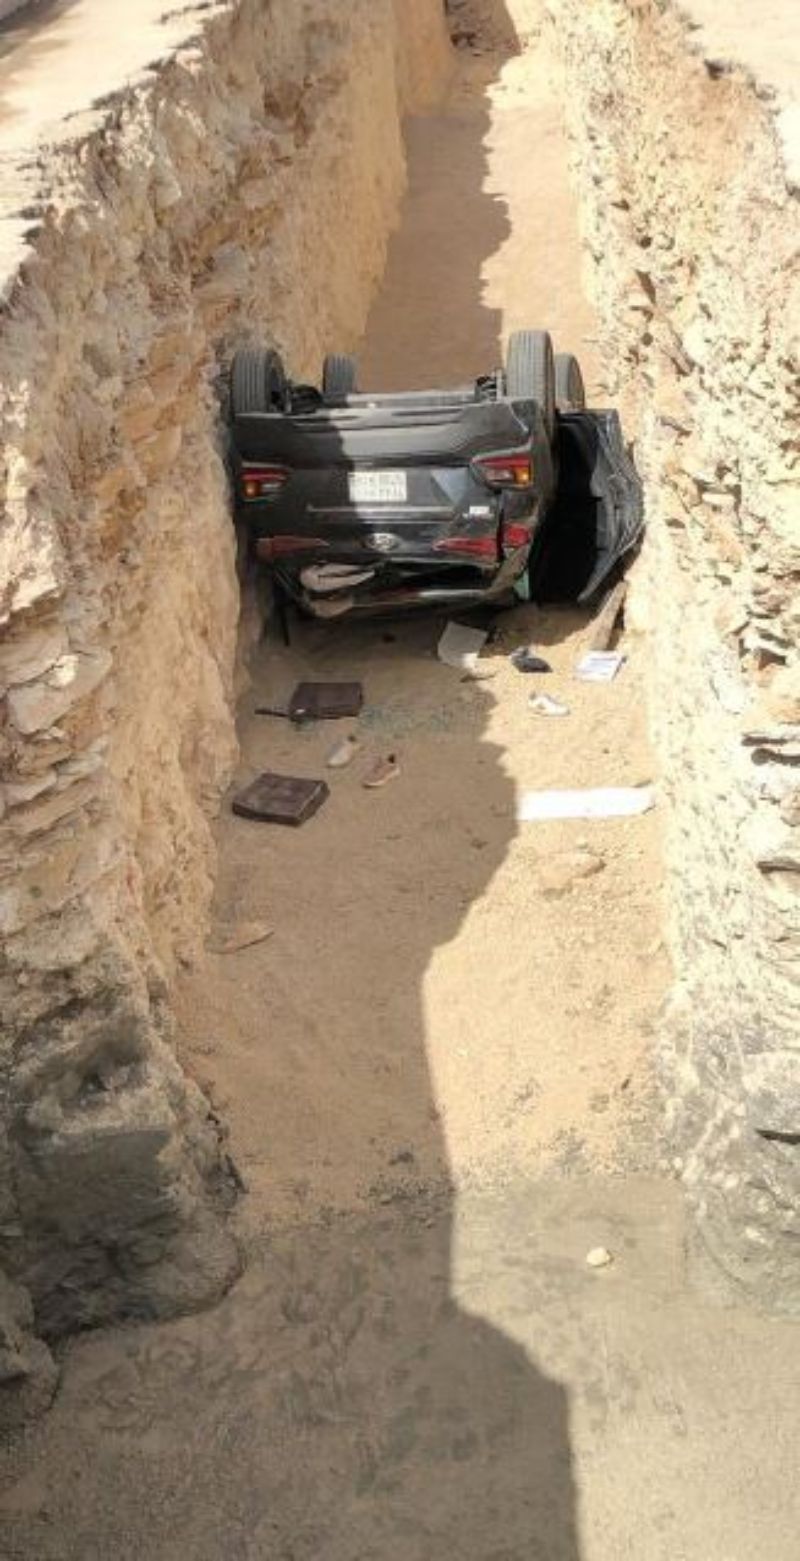 "بالصور" حادث مروع لسيارة انقلبت في حفرة وبداخلها 3 فتيات بالرياض 5